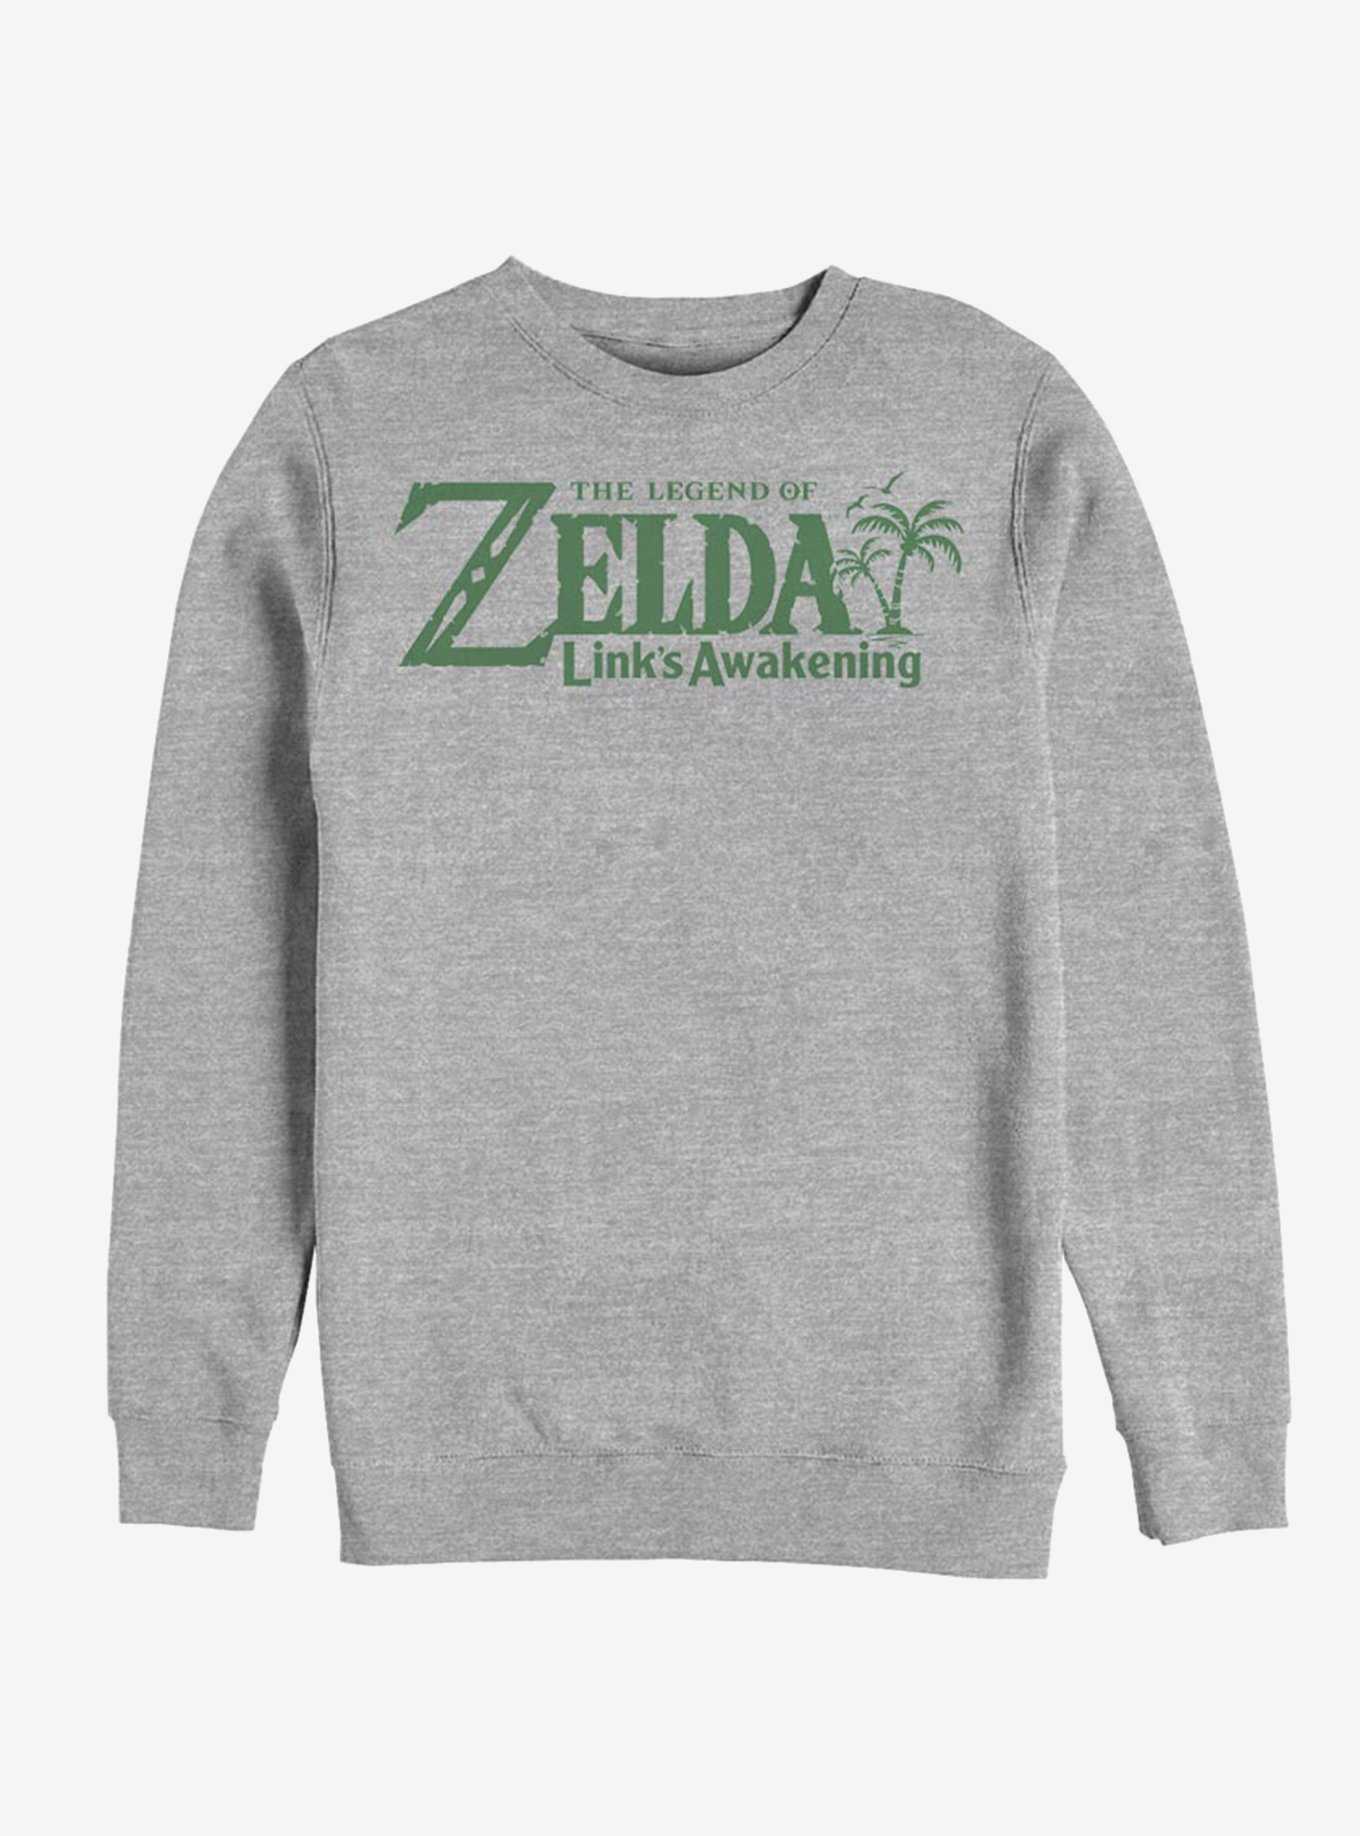 Nintendo The Legend of Zelda Link's Awakening Sweatshirt, , hi-res